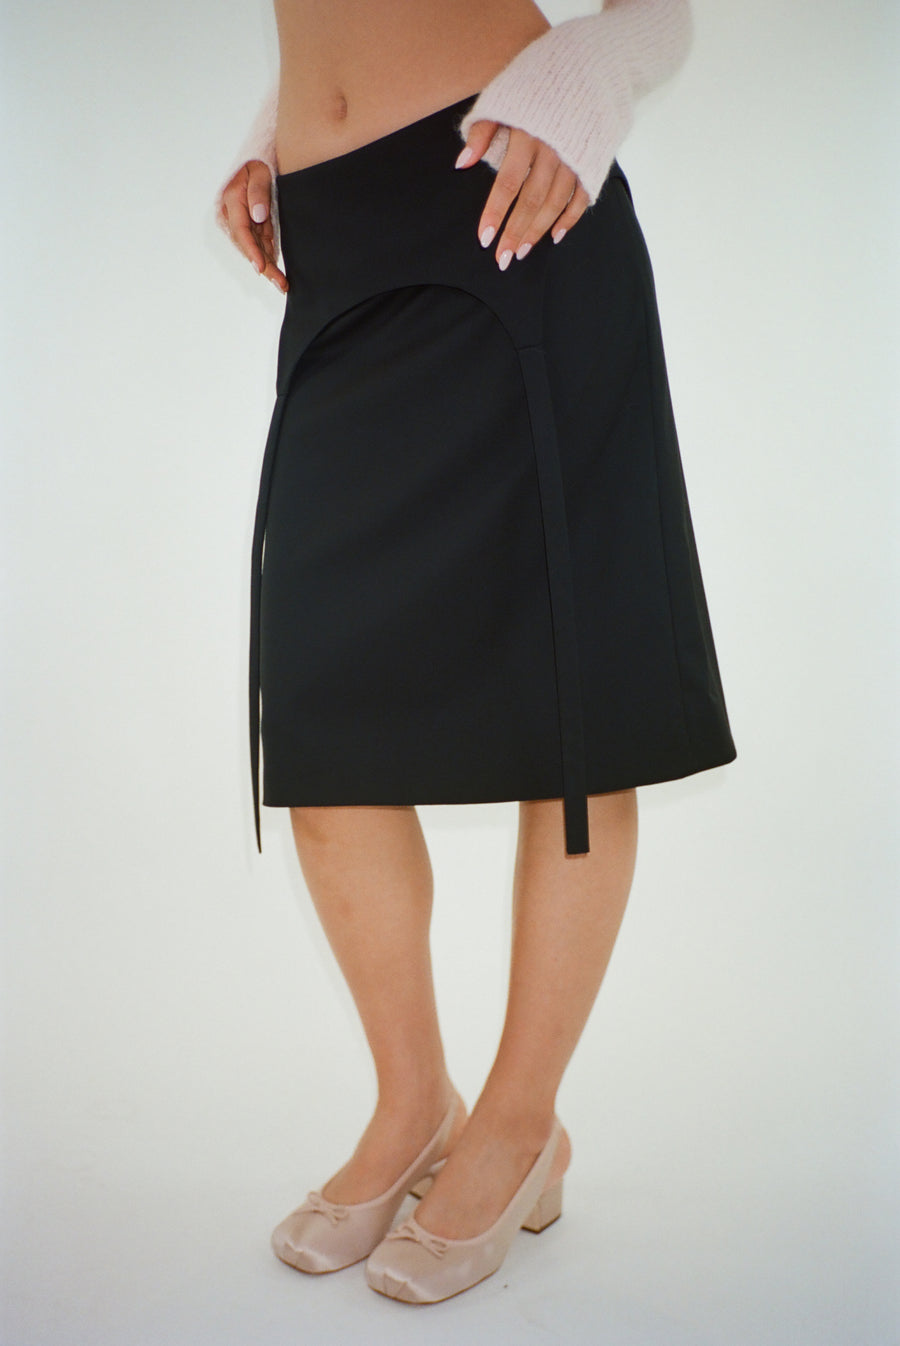 Knee length skirt in black with garter strap detail on model